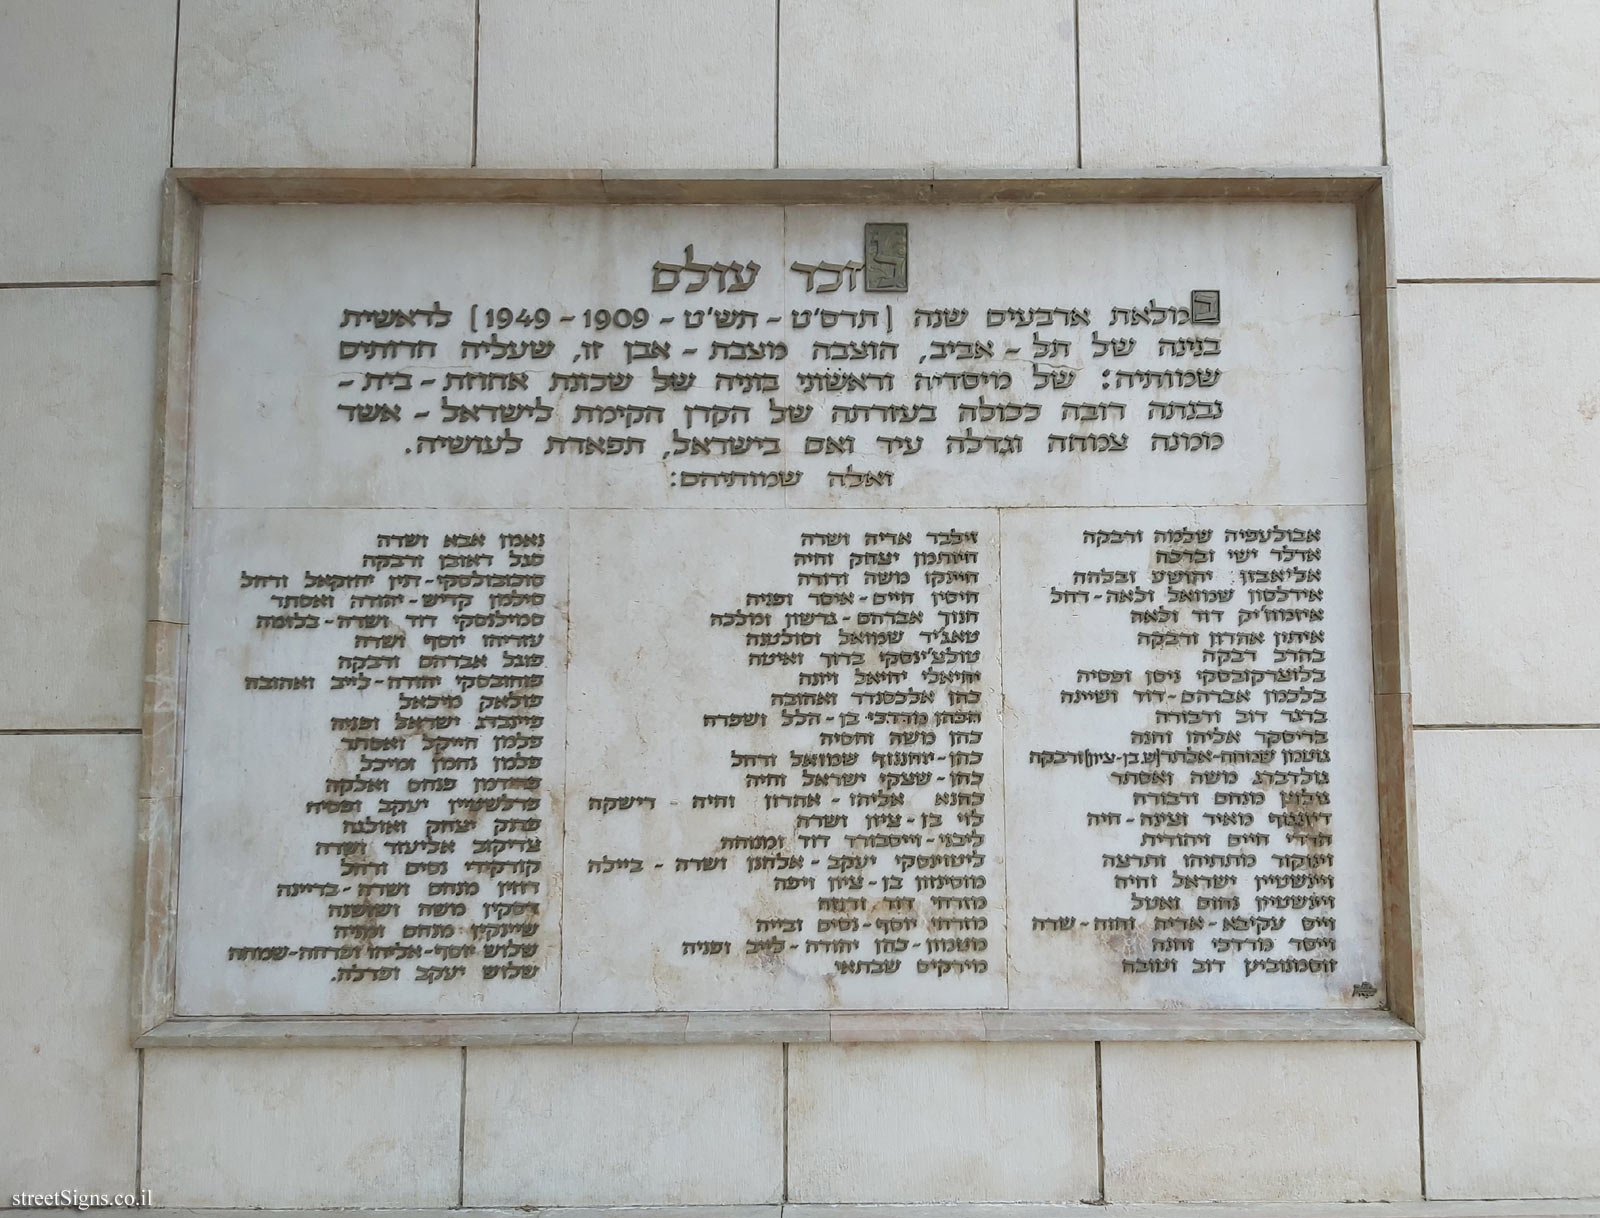 Tel Aviv - Auerbach StreetTel Aviv Founders Monument - Rothschild Blvd 19, Tel Aviv-Yafo, Israel